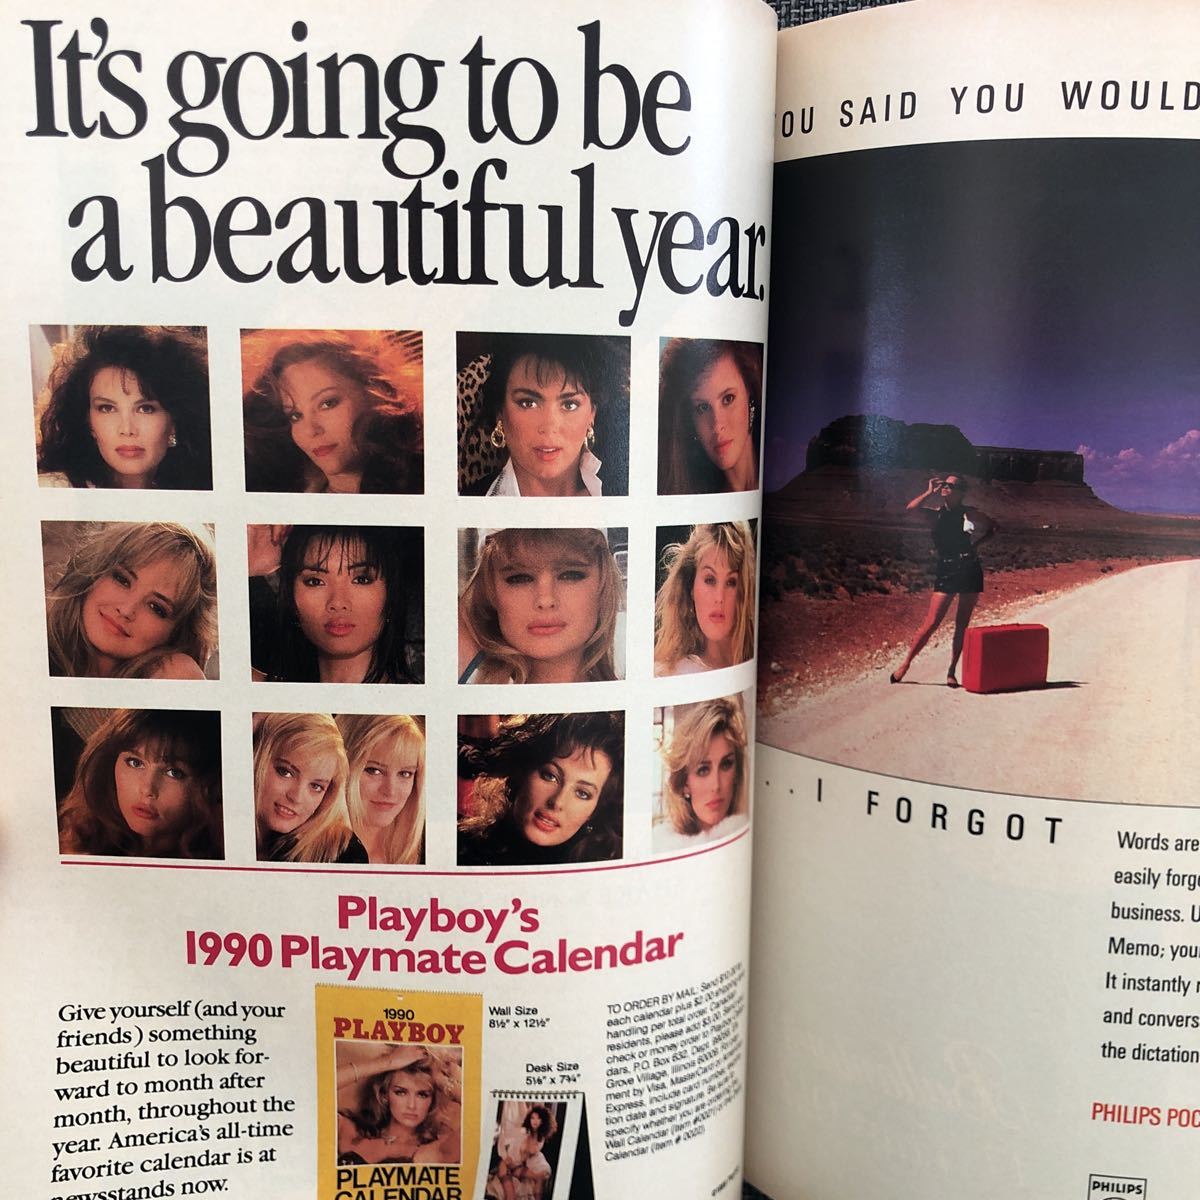 PLAYBOY Play Boy журнал иностранная версия золотой . прекрасный человек sexy обнаженный Vintage редкий товар November 1989